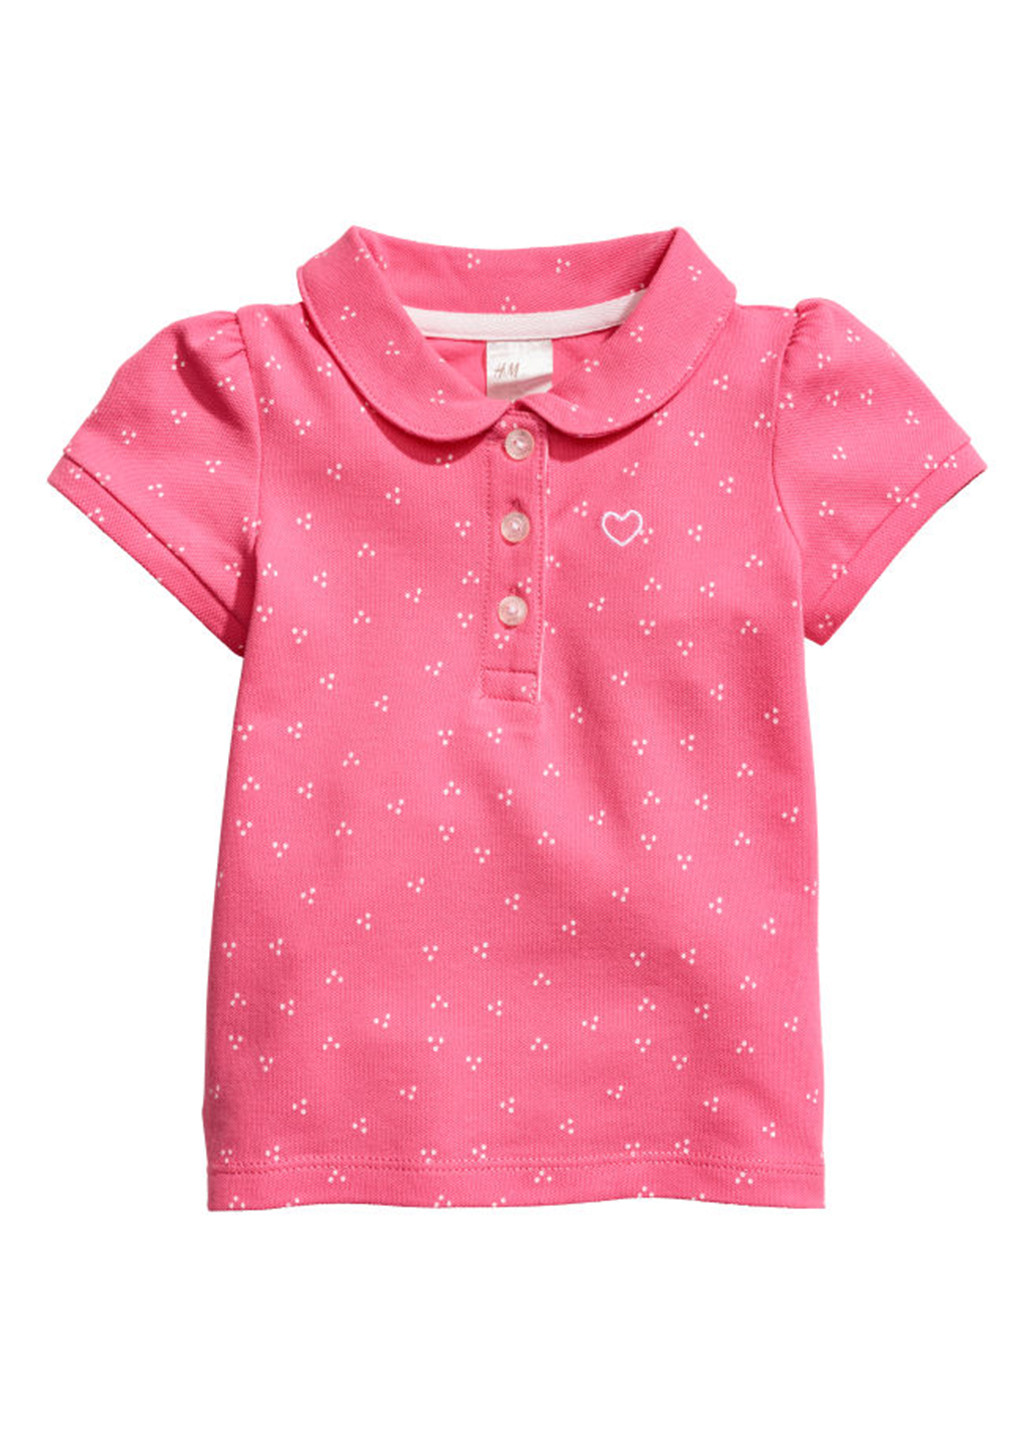 Розовая детская футболка-поло для девочки H&M с абстрактным узором